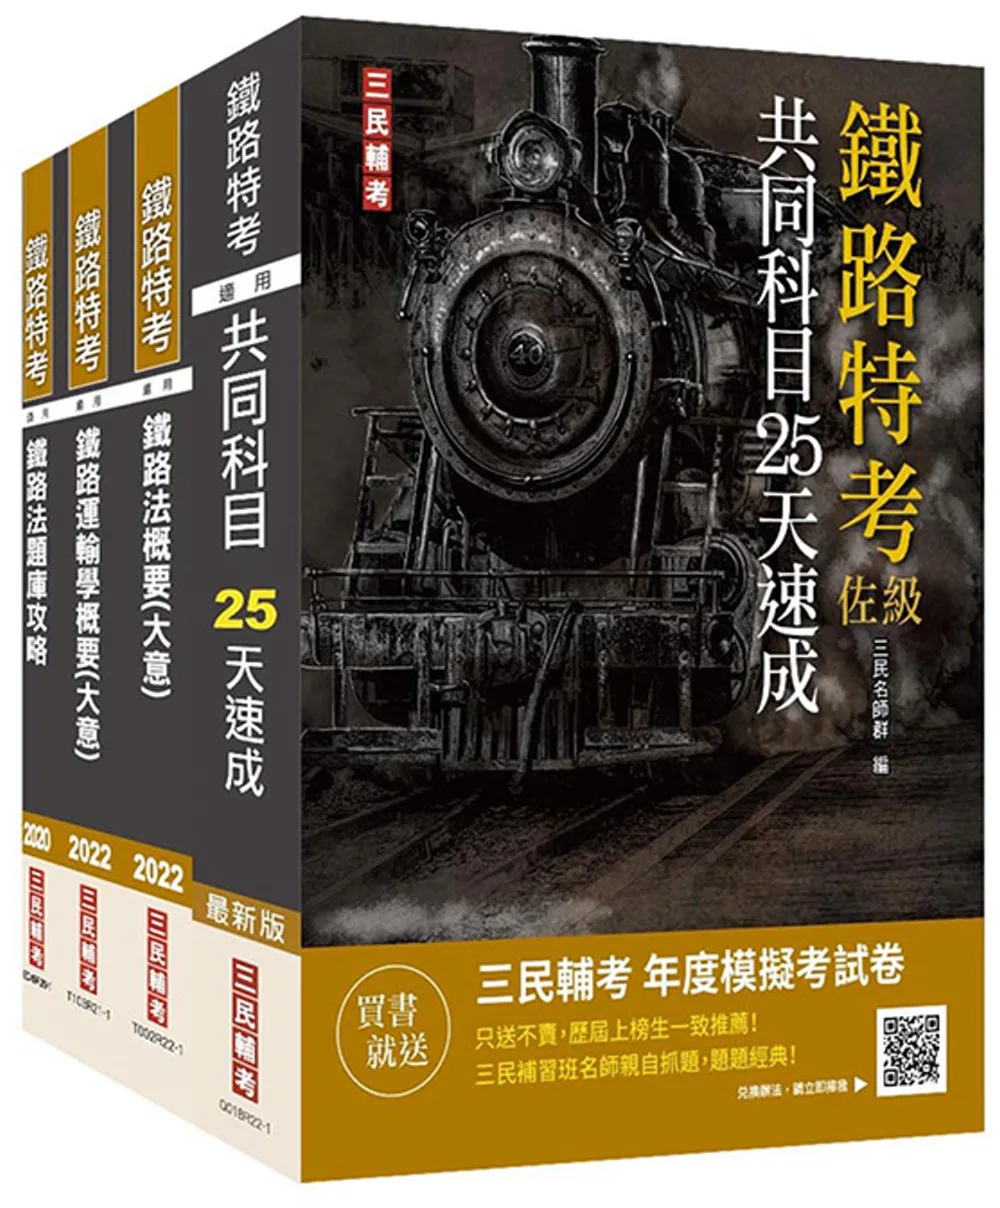 2022年鐵路員級[運輸營業][專業科目]套書(贈鐵路法搶分小法典+鐵路特考年度模擬考試卷)